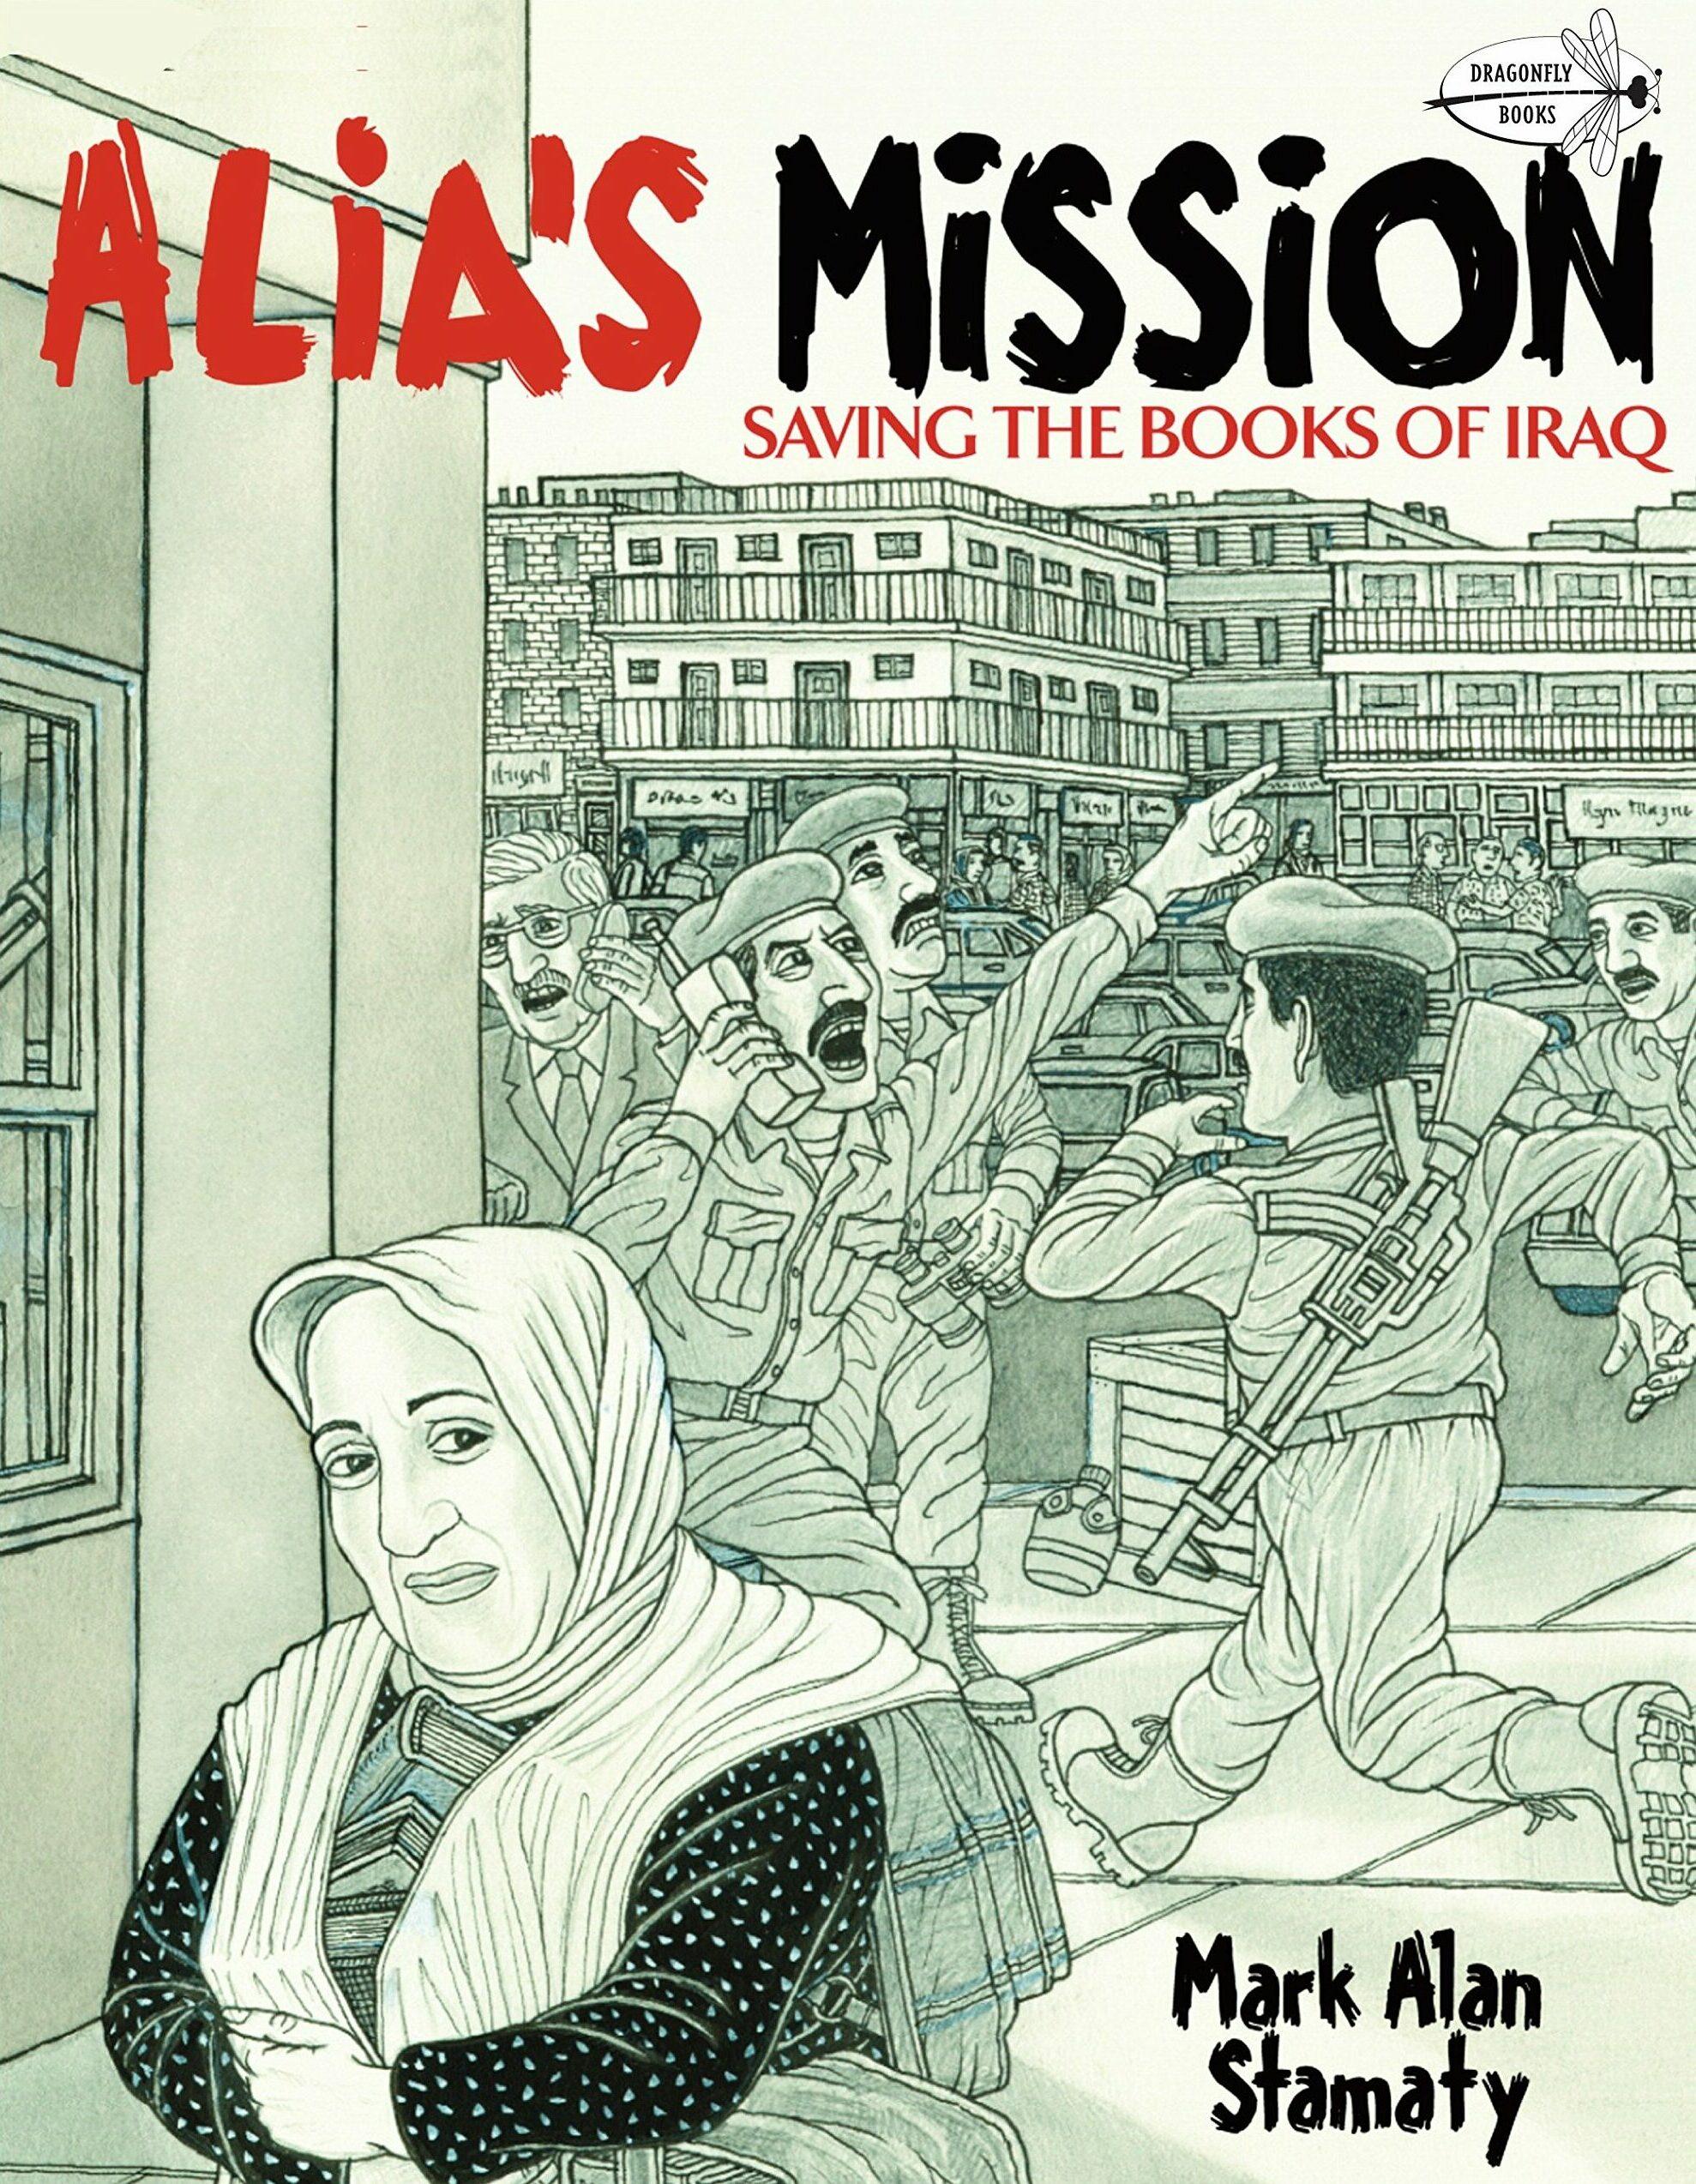 السيدة عالية محمد باقر - مهمة علية إنقاذ كتب العراق كتاب كوميكس لرسام الكاريكاتير مارك آلان ستاماتي